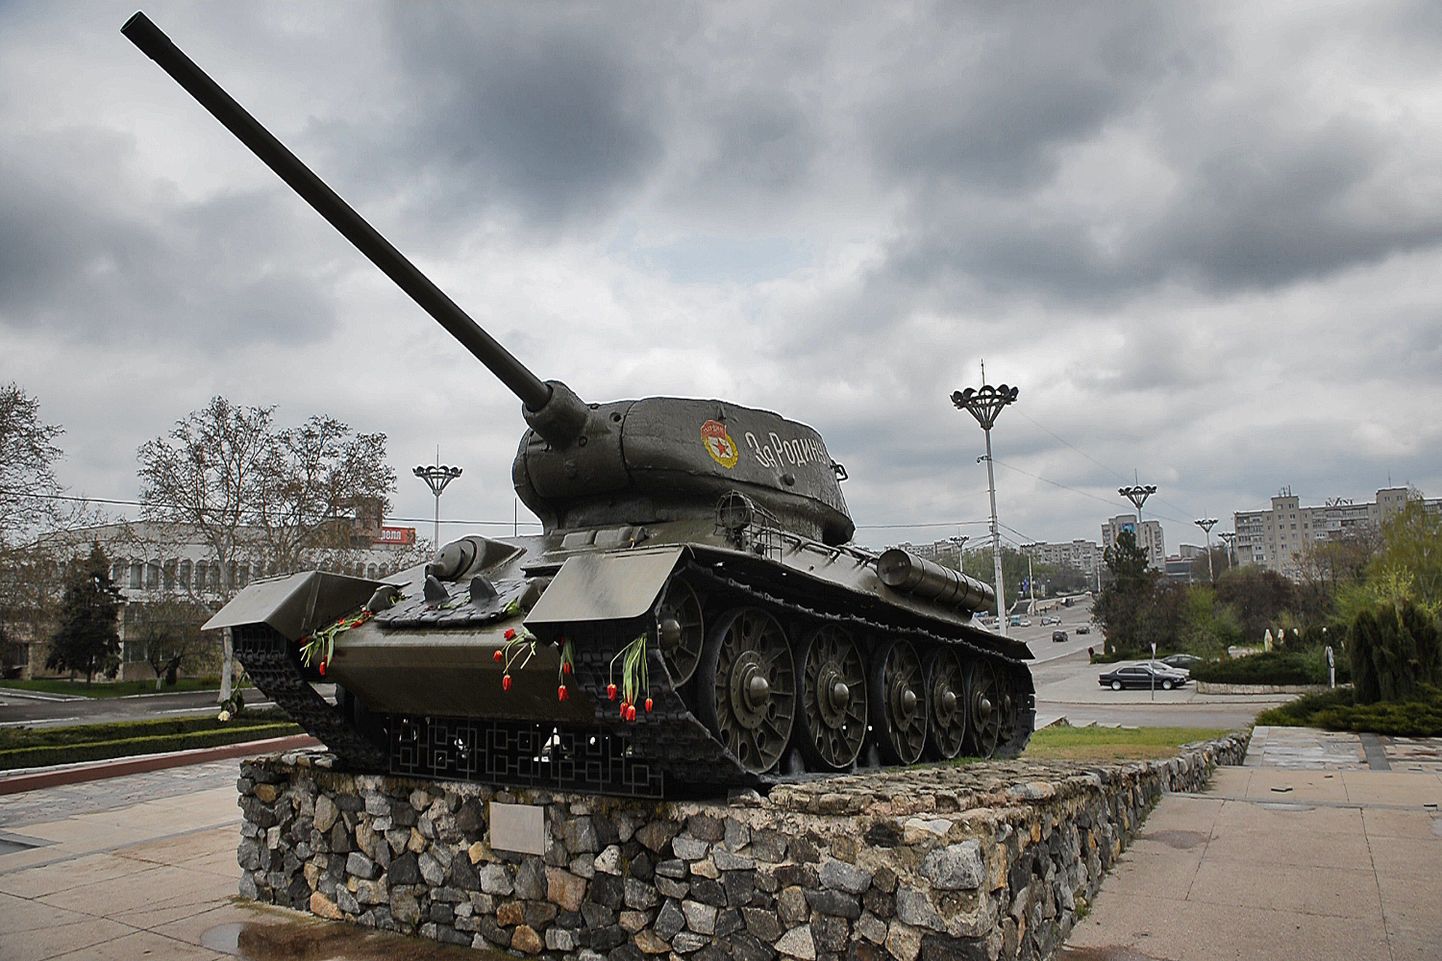 Punaarmee tank.